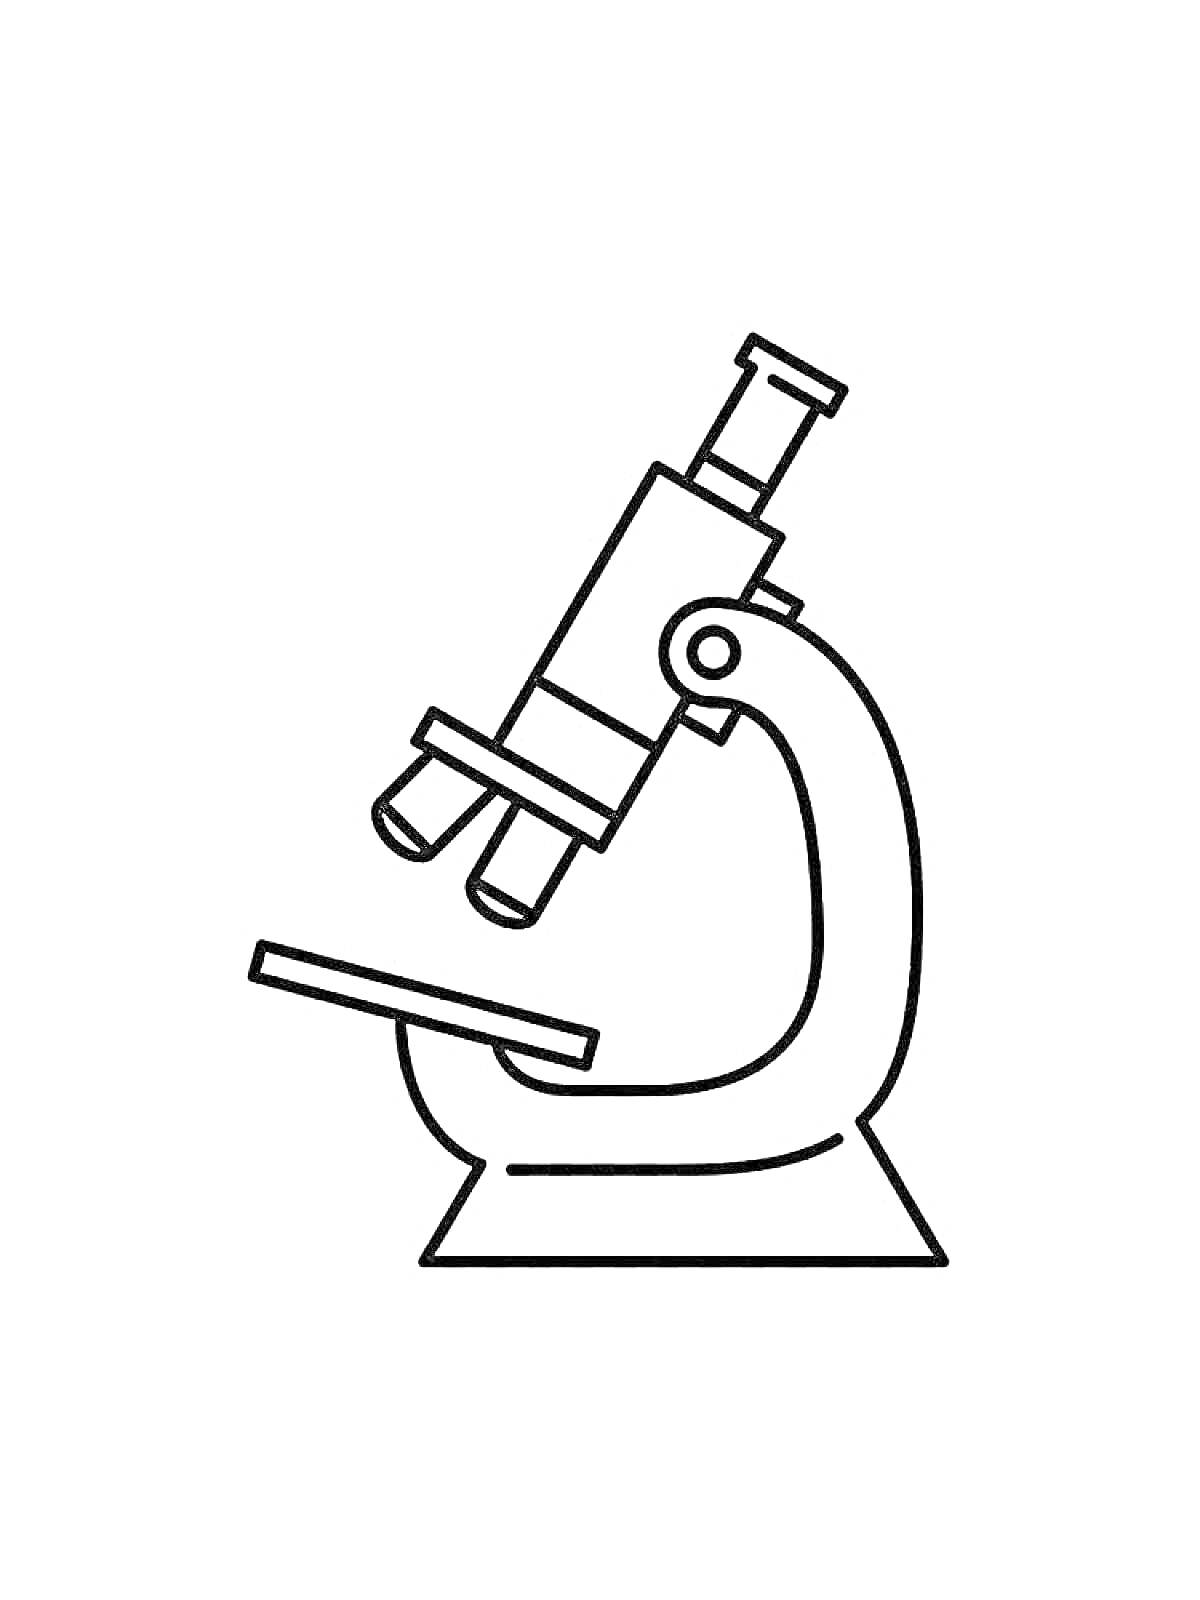 Микроскоп с окуляром, объективами, штативом и предметным столиком